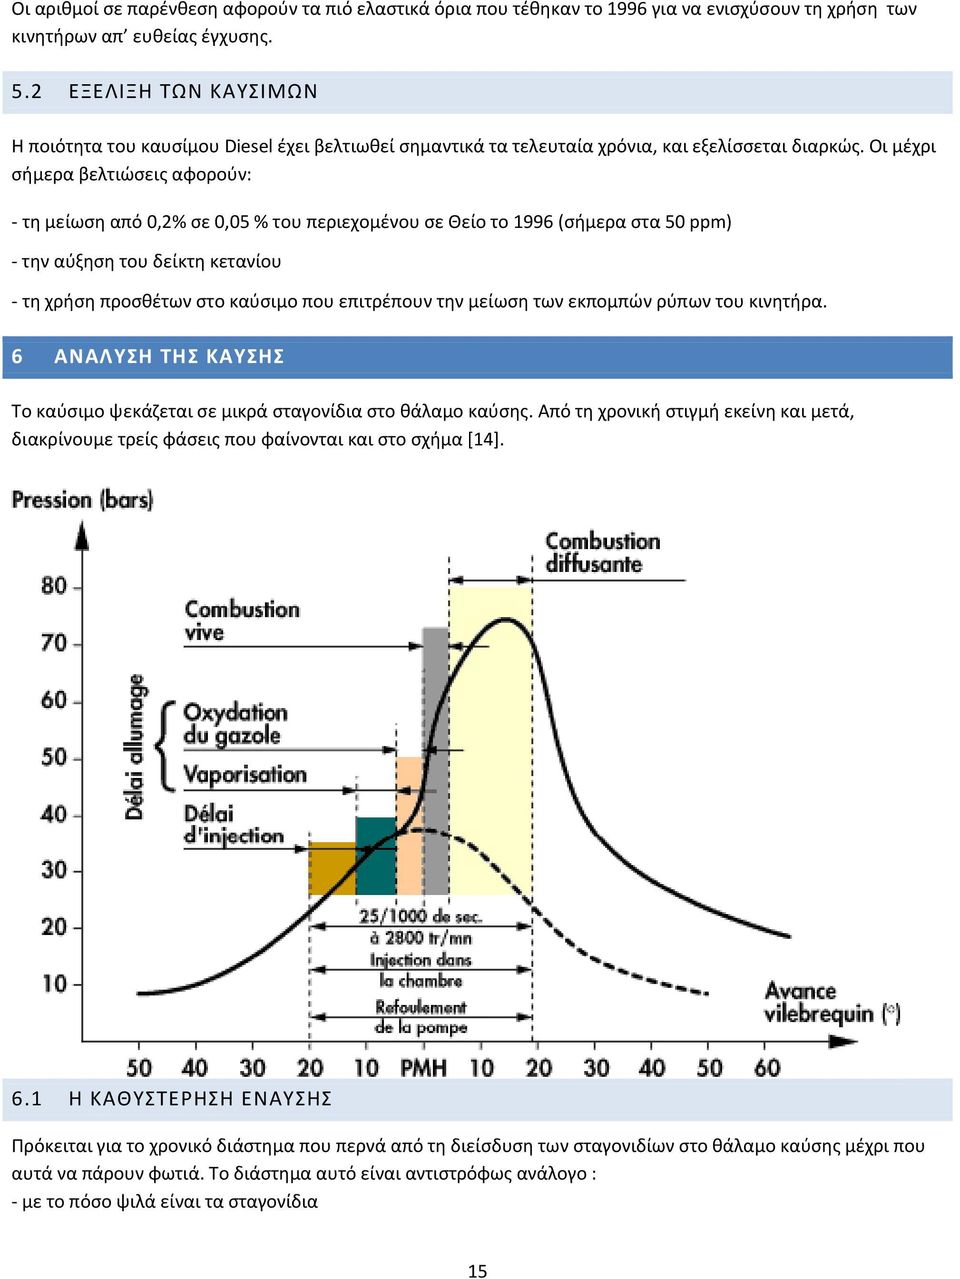 Οι μέχρι σήμερα βελτιώσεις αφορούν: τη μείωση από 0,2% σε 0,05 % του περιεχομένου σε Θείο το 1996 (σήμερα στα 50 ppm) την αύξηση του δείκτη κετανίου τη χρήση προσθέτων στο καύσιμο που επιτρέπουν την